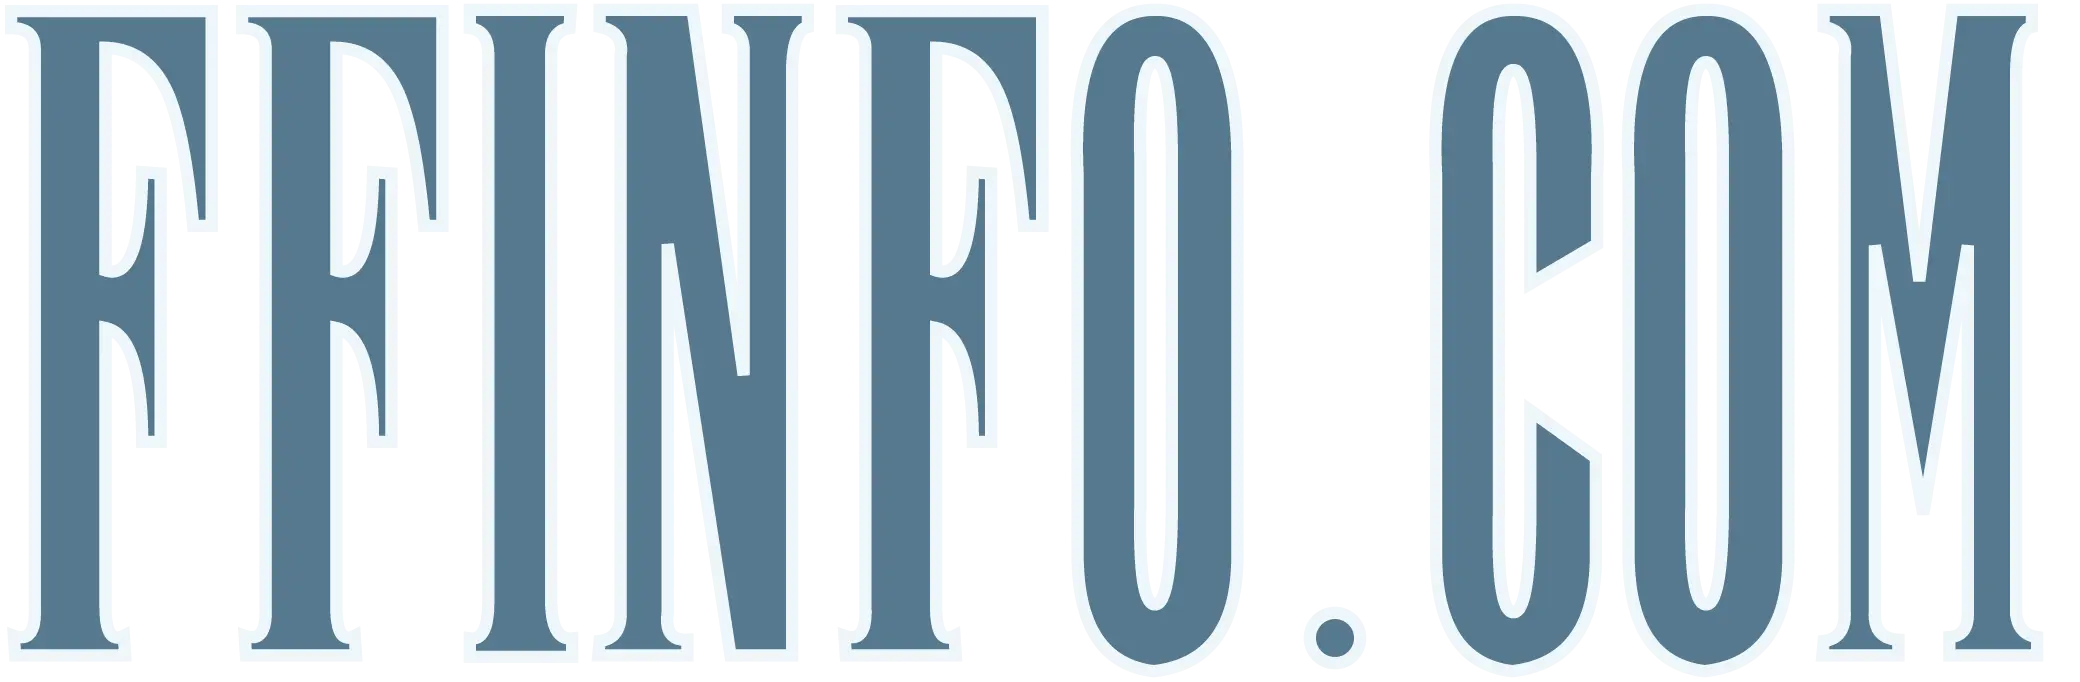 The Final Fantasy Info.com logo